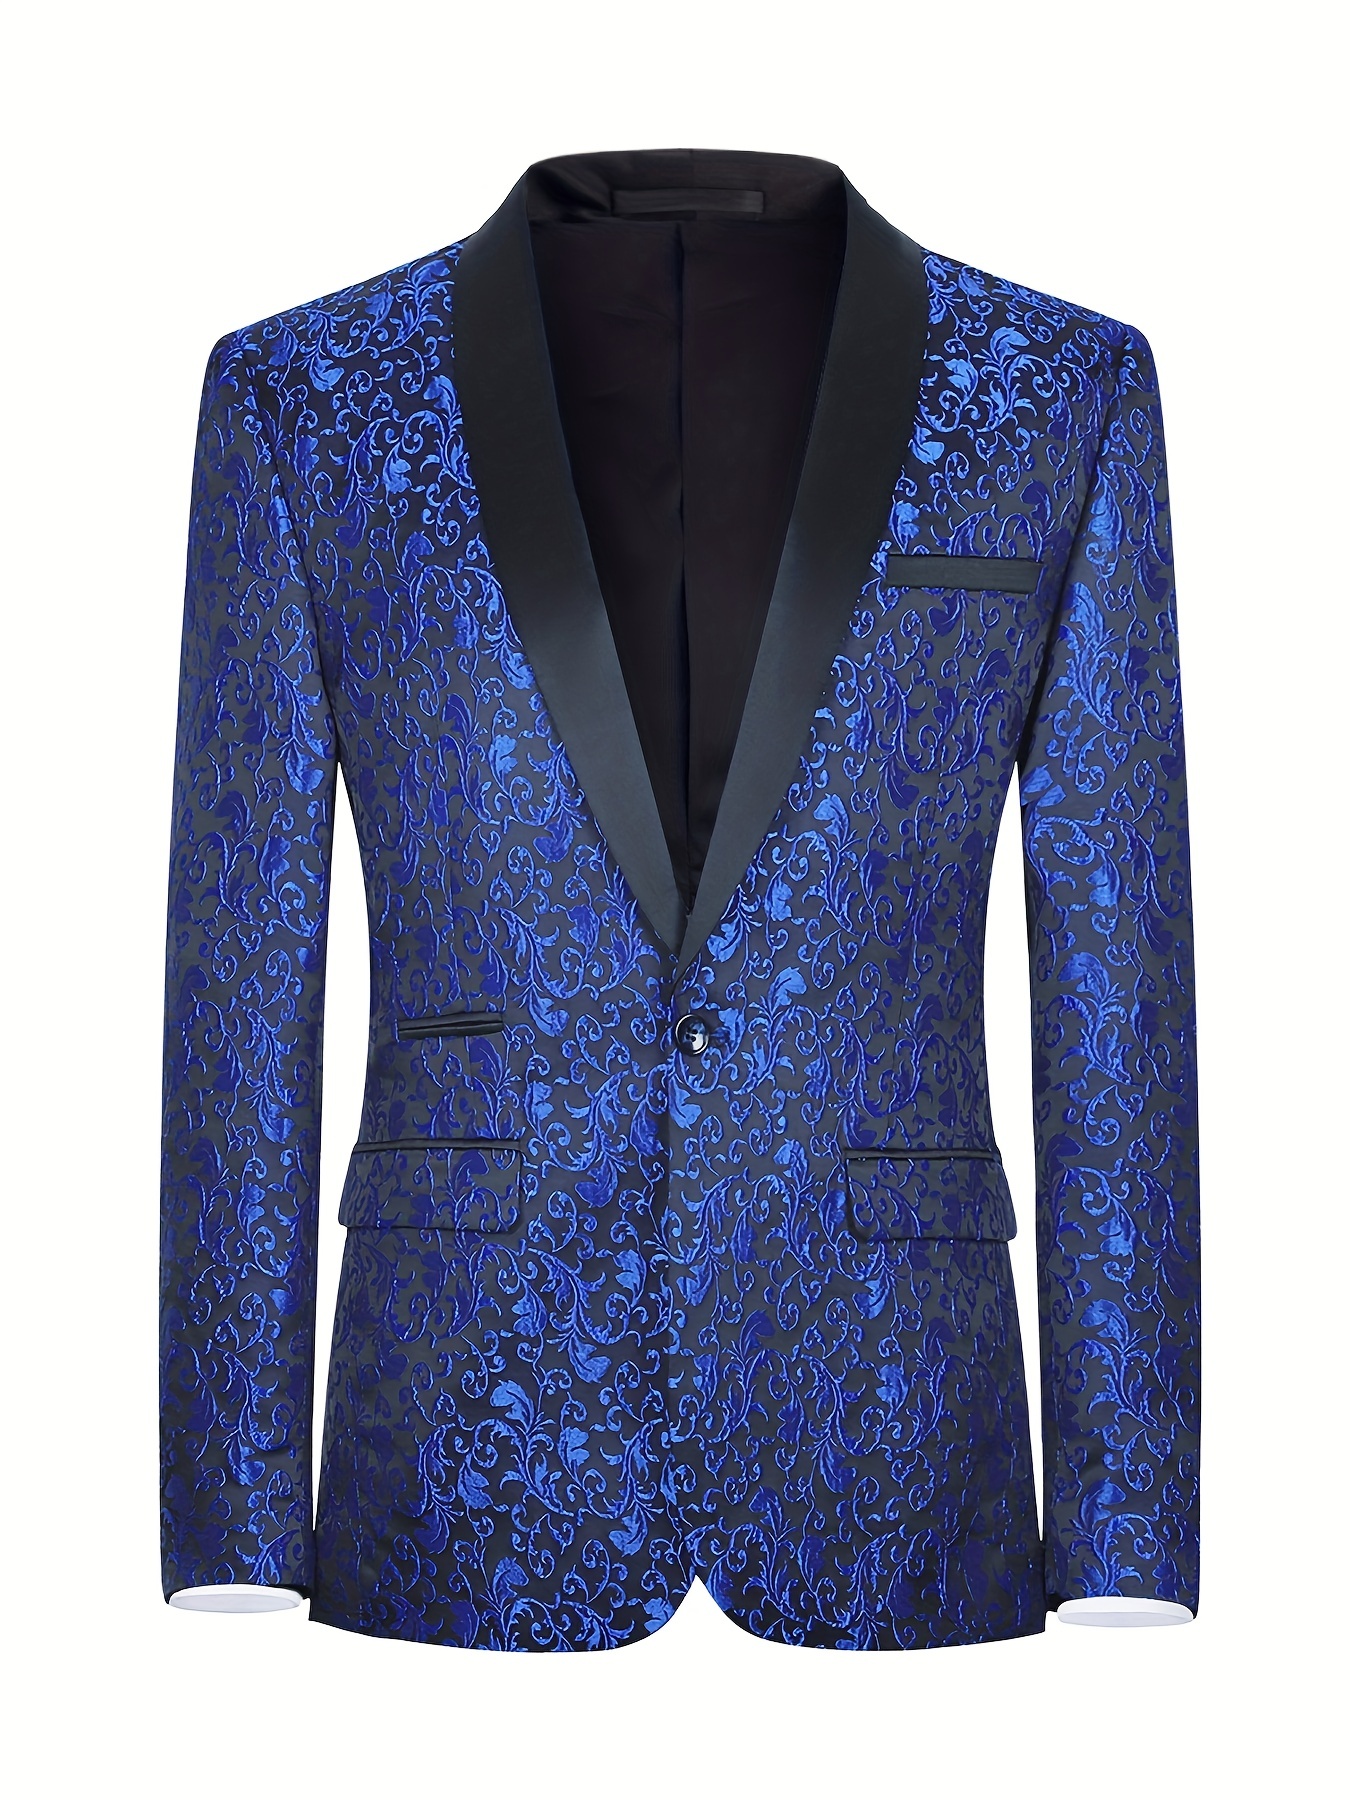 BLUE TUXEDO WITH SHAWL COLLAR - Classy Formal Wear